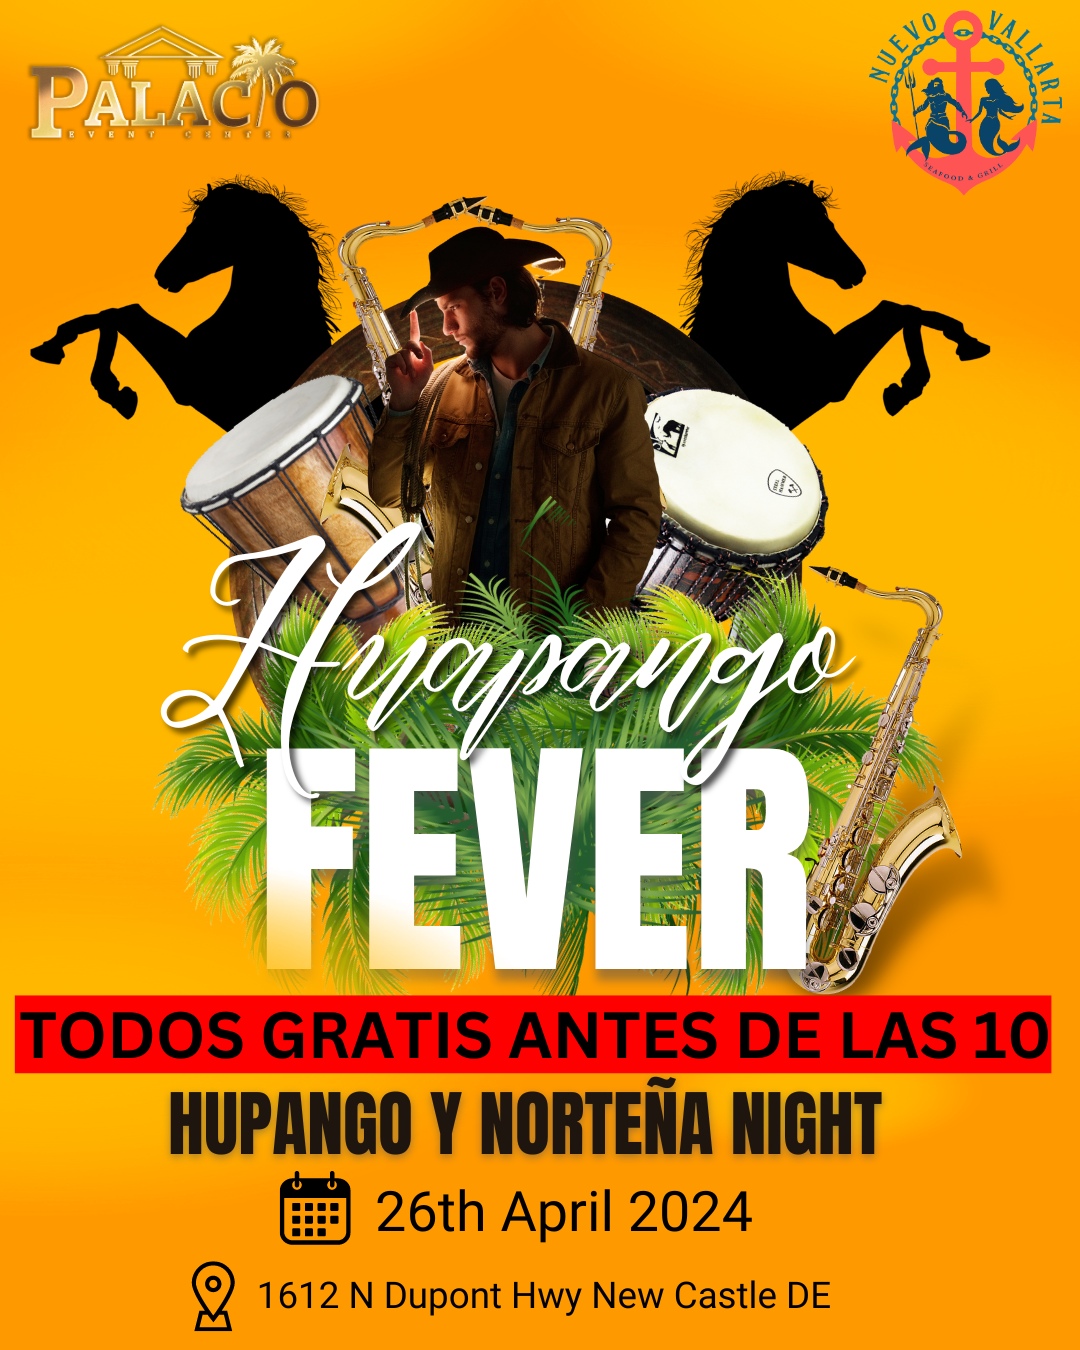 Huapango fever